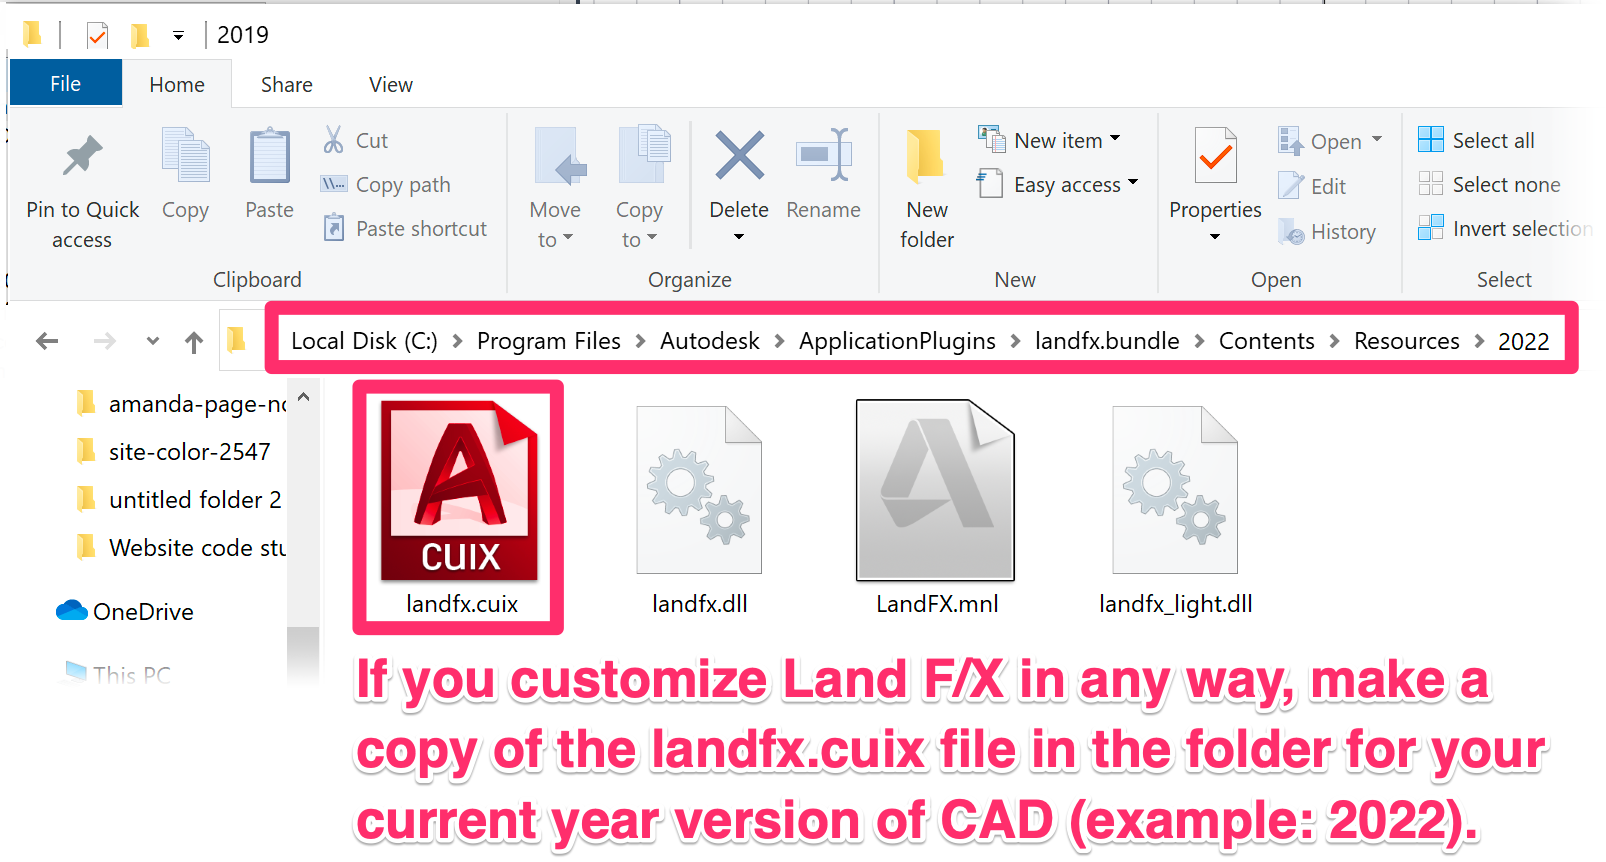 Copy the landfx.cuix file if you make changes